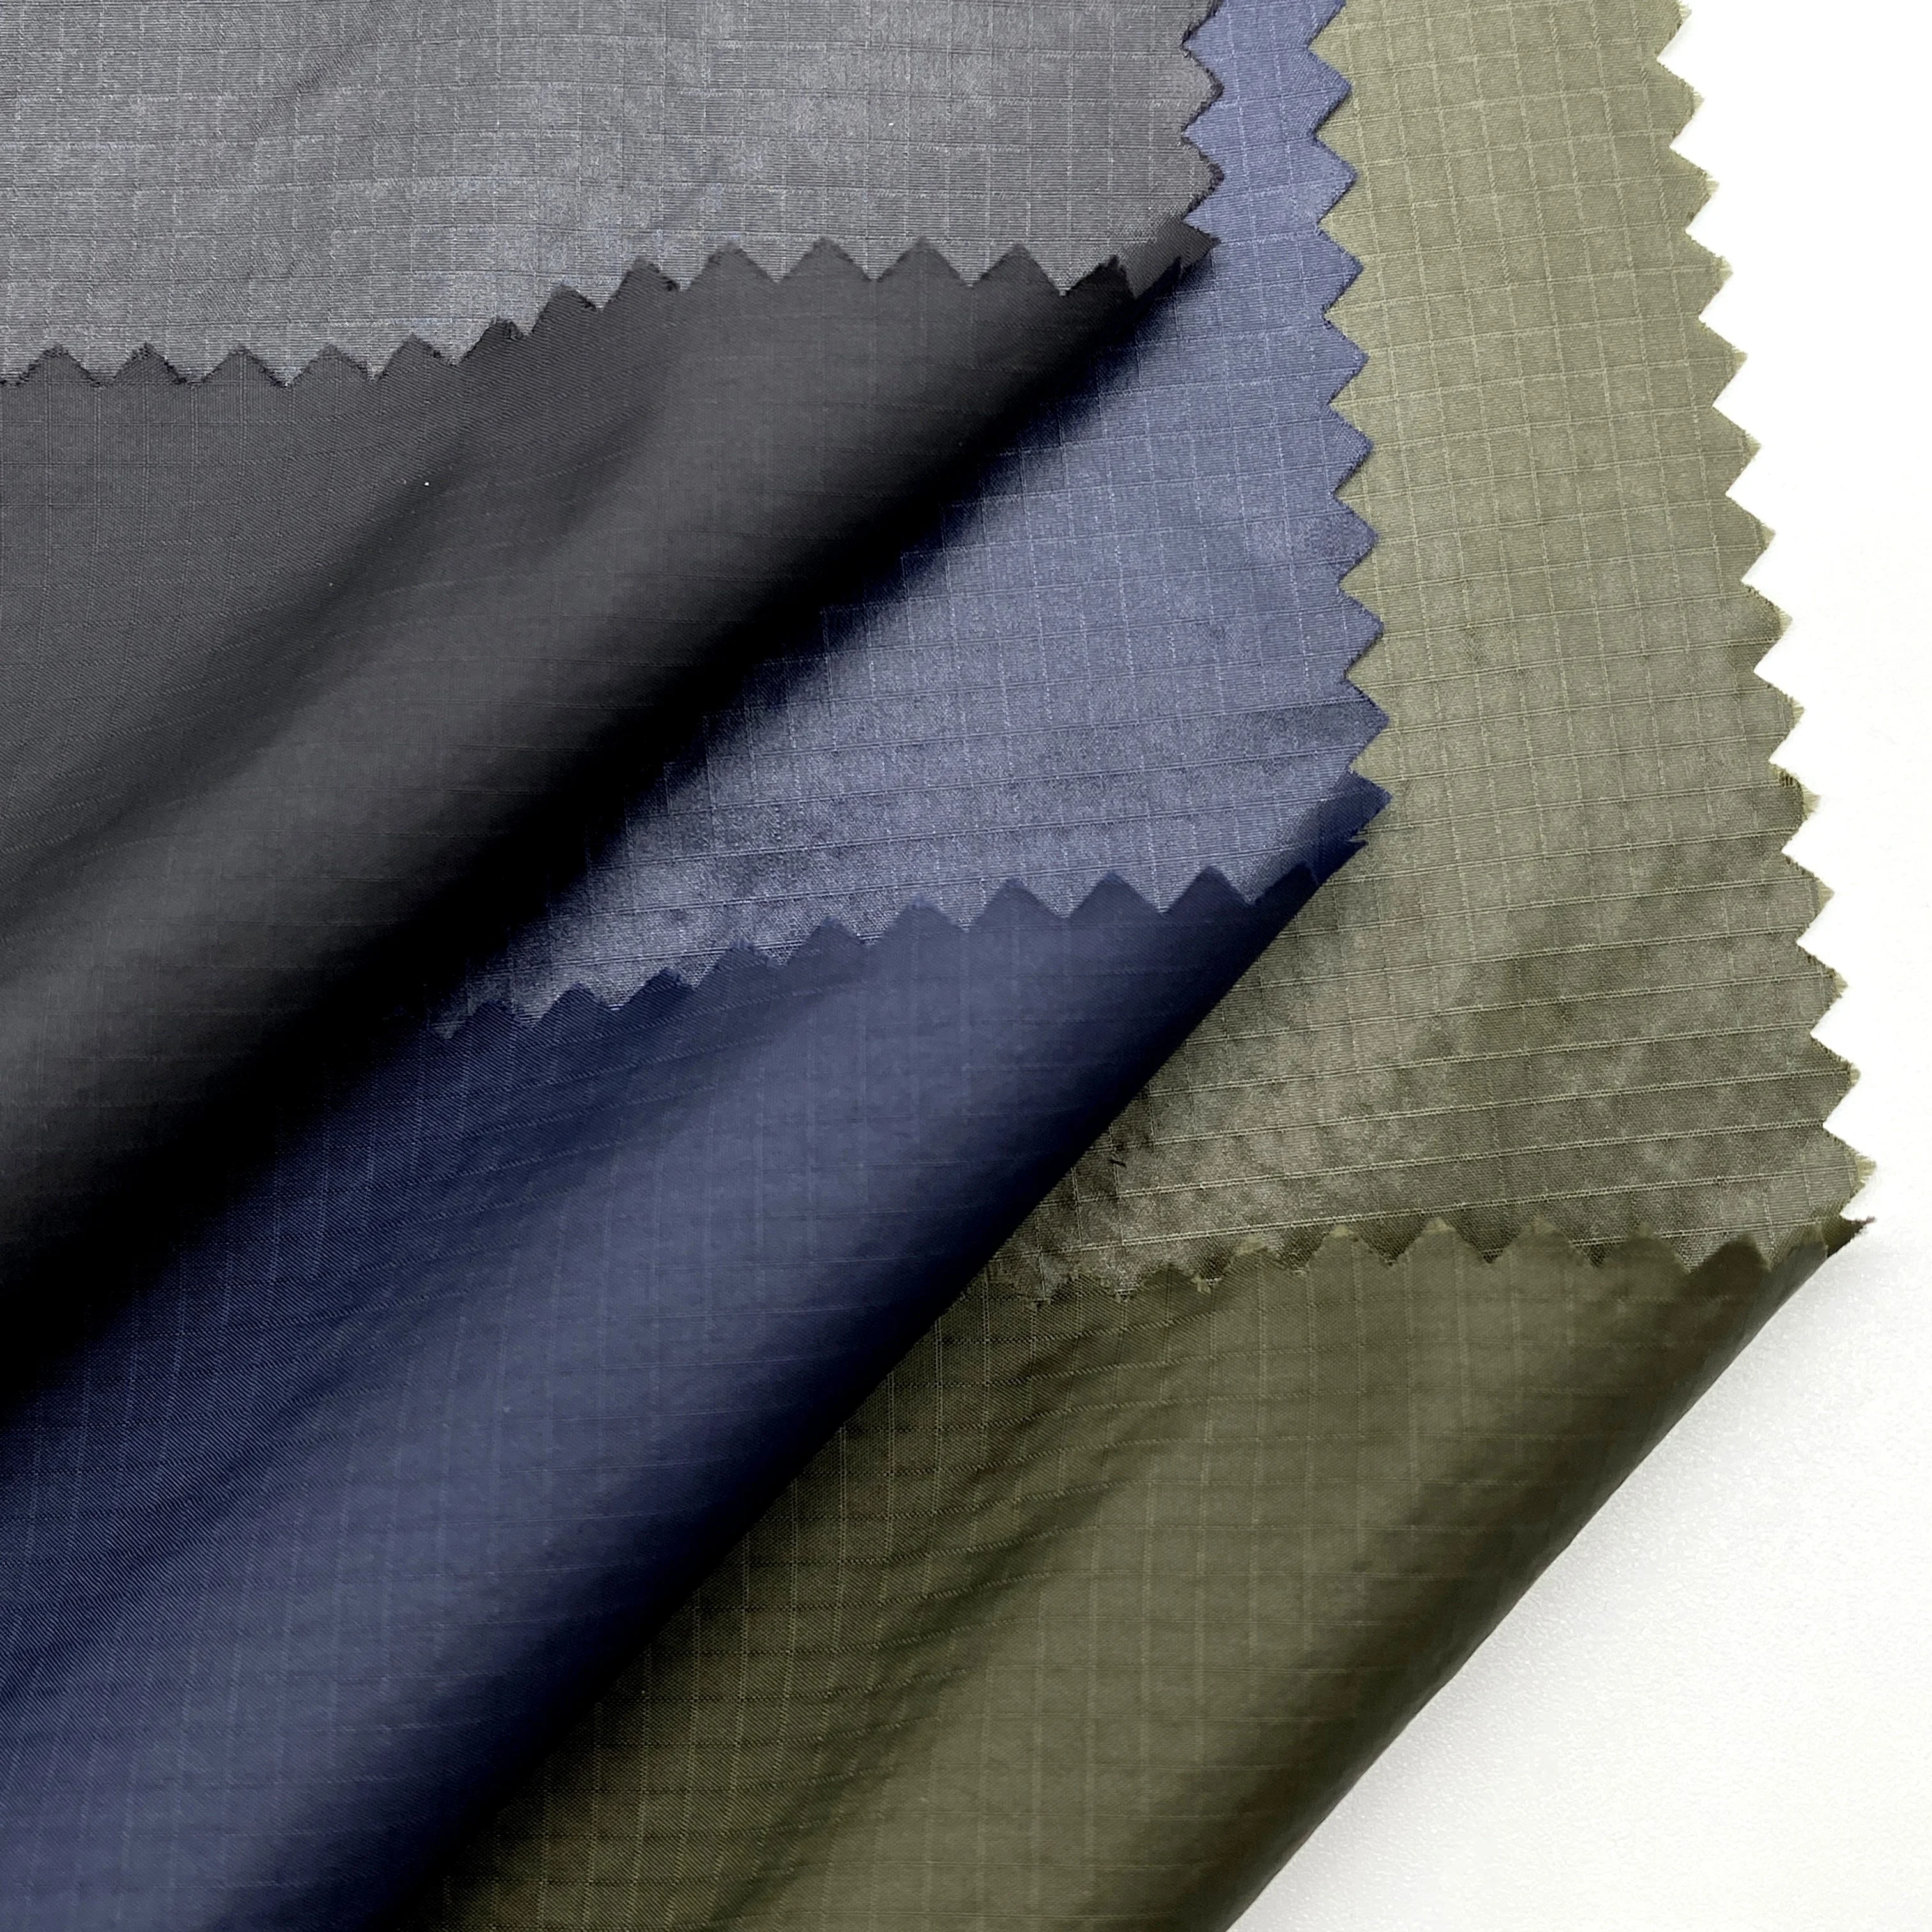 
OEKO-100 стандартная GRS 430T 0,2*0,2 см нейлоновая ткань Ripstop 100% водонепроницаемая отделка одежды мужских пальто 